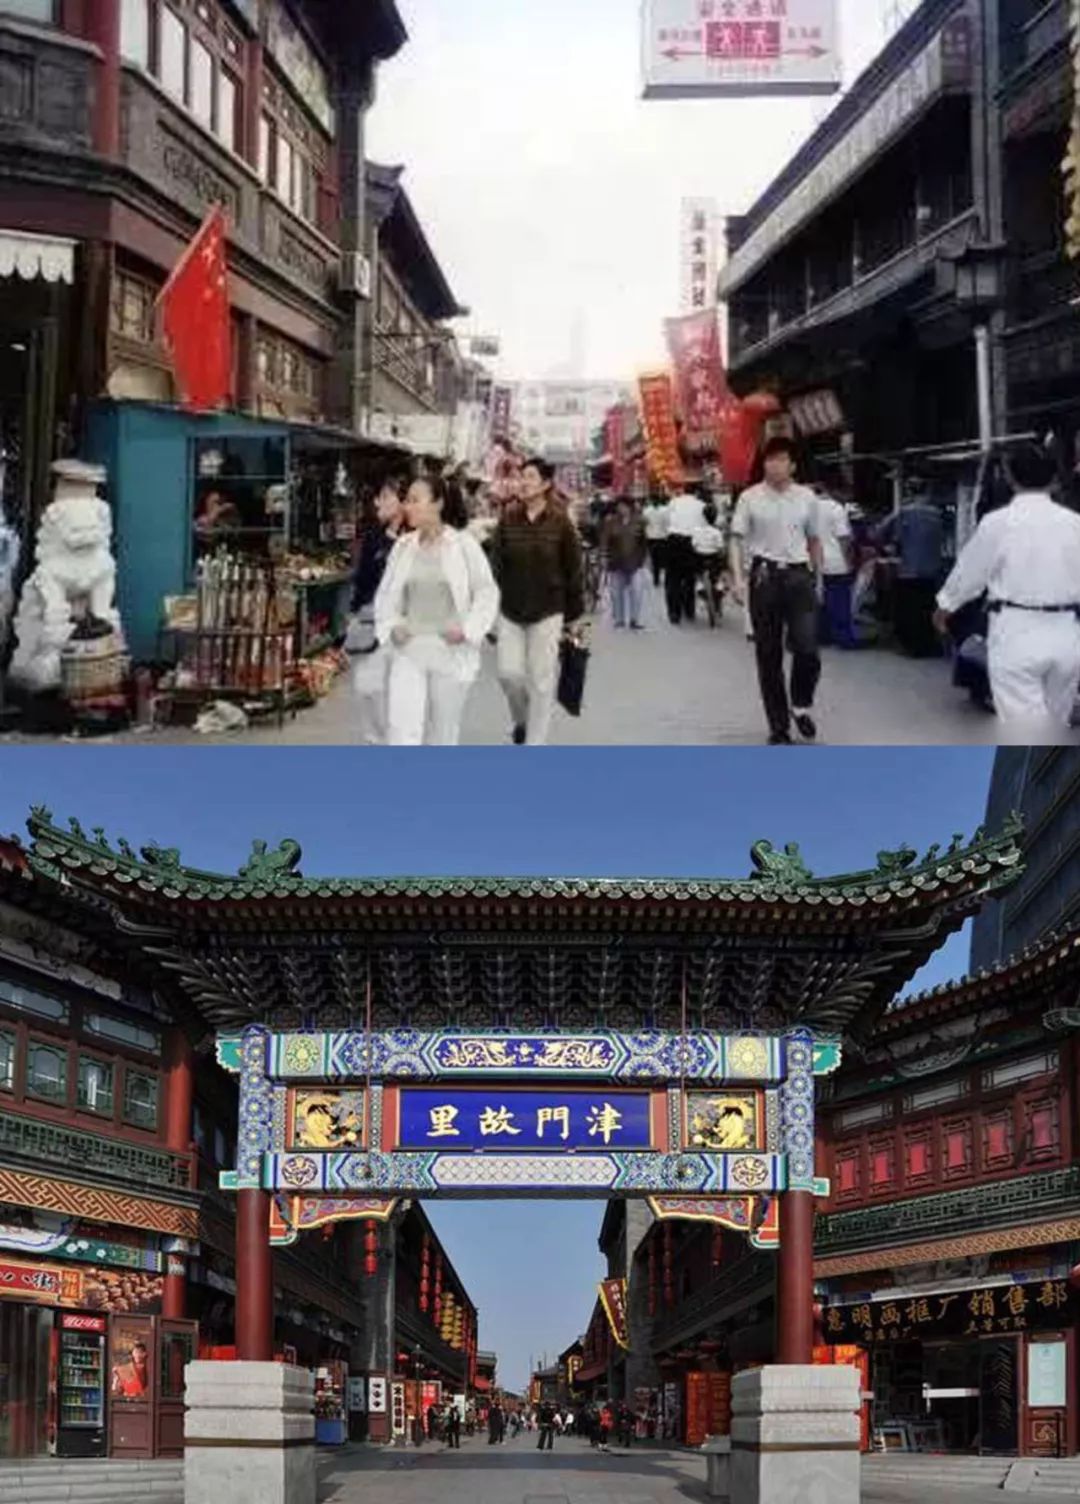 天津变化前后的照片图片